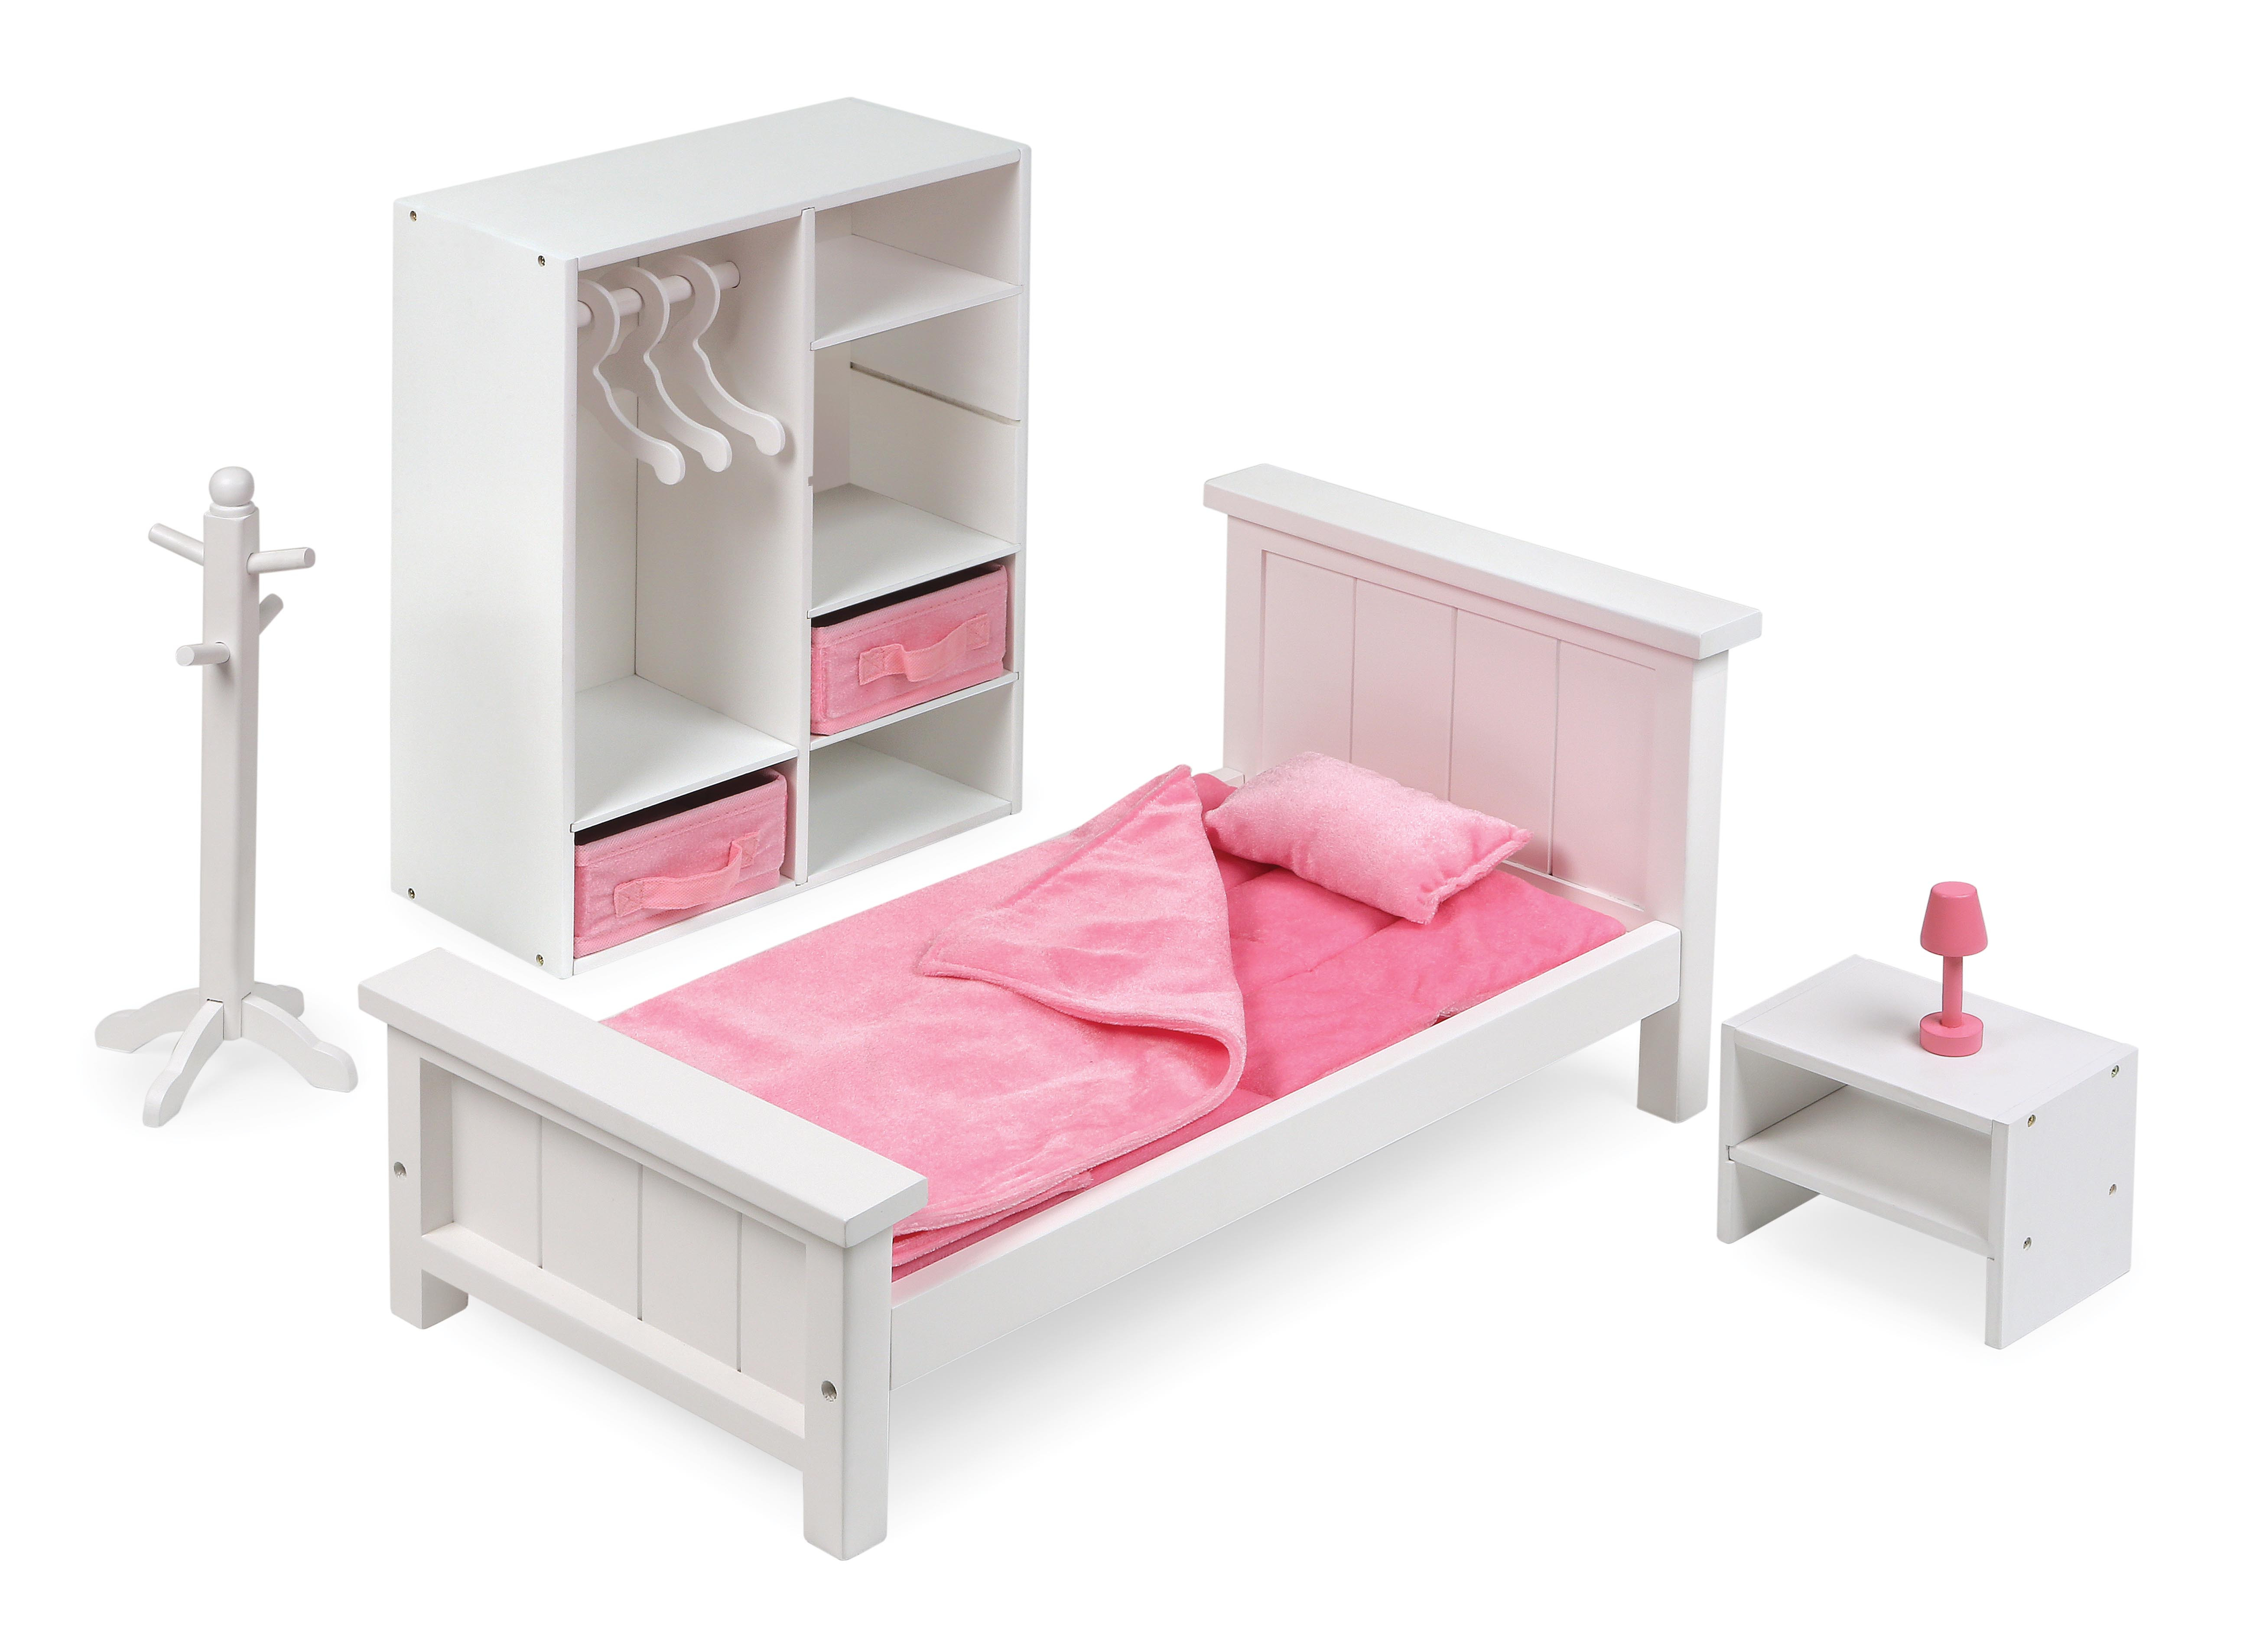 El tejón de la Cesta de Muebles de Dormitorio Conjunto de 18 pulgadas de Muñecas - Blanco/Rosa - se Adapta a la Muchacha Americana, Mi Vida y la Mayoría de 18" Muñecas - -046605120217-0